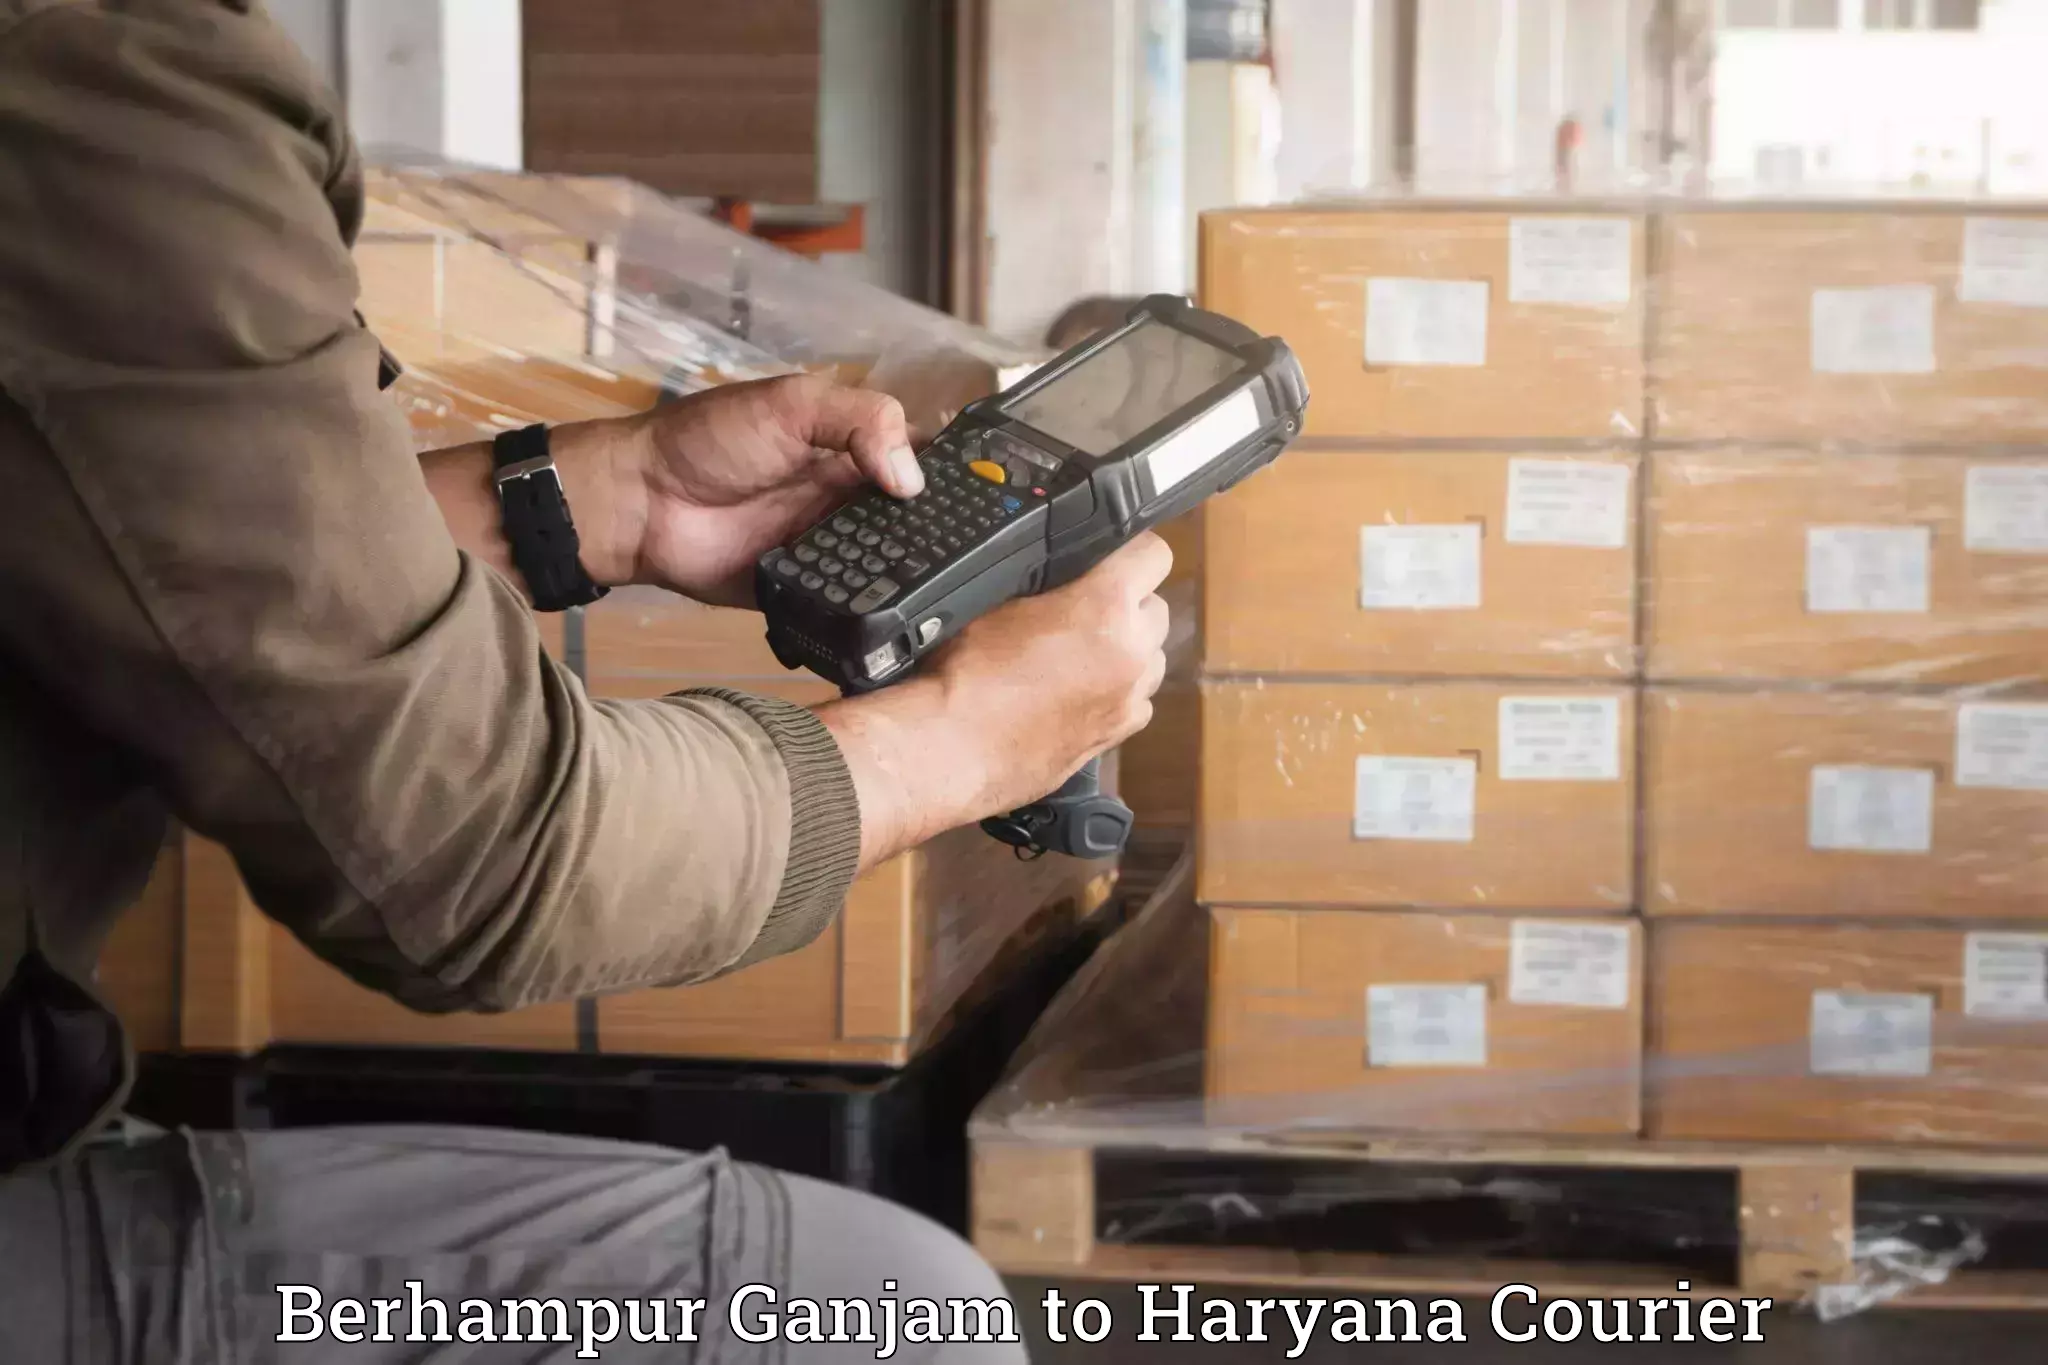 Furniture transport and logistics Berhampur Ganjam to Chaudhary Charan Singh Haryana Agricultural University Hisar